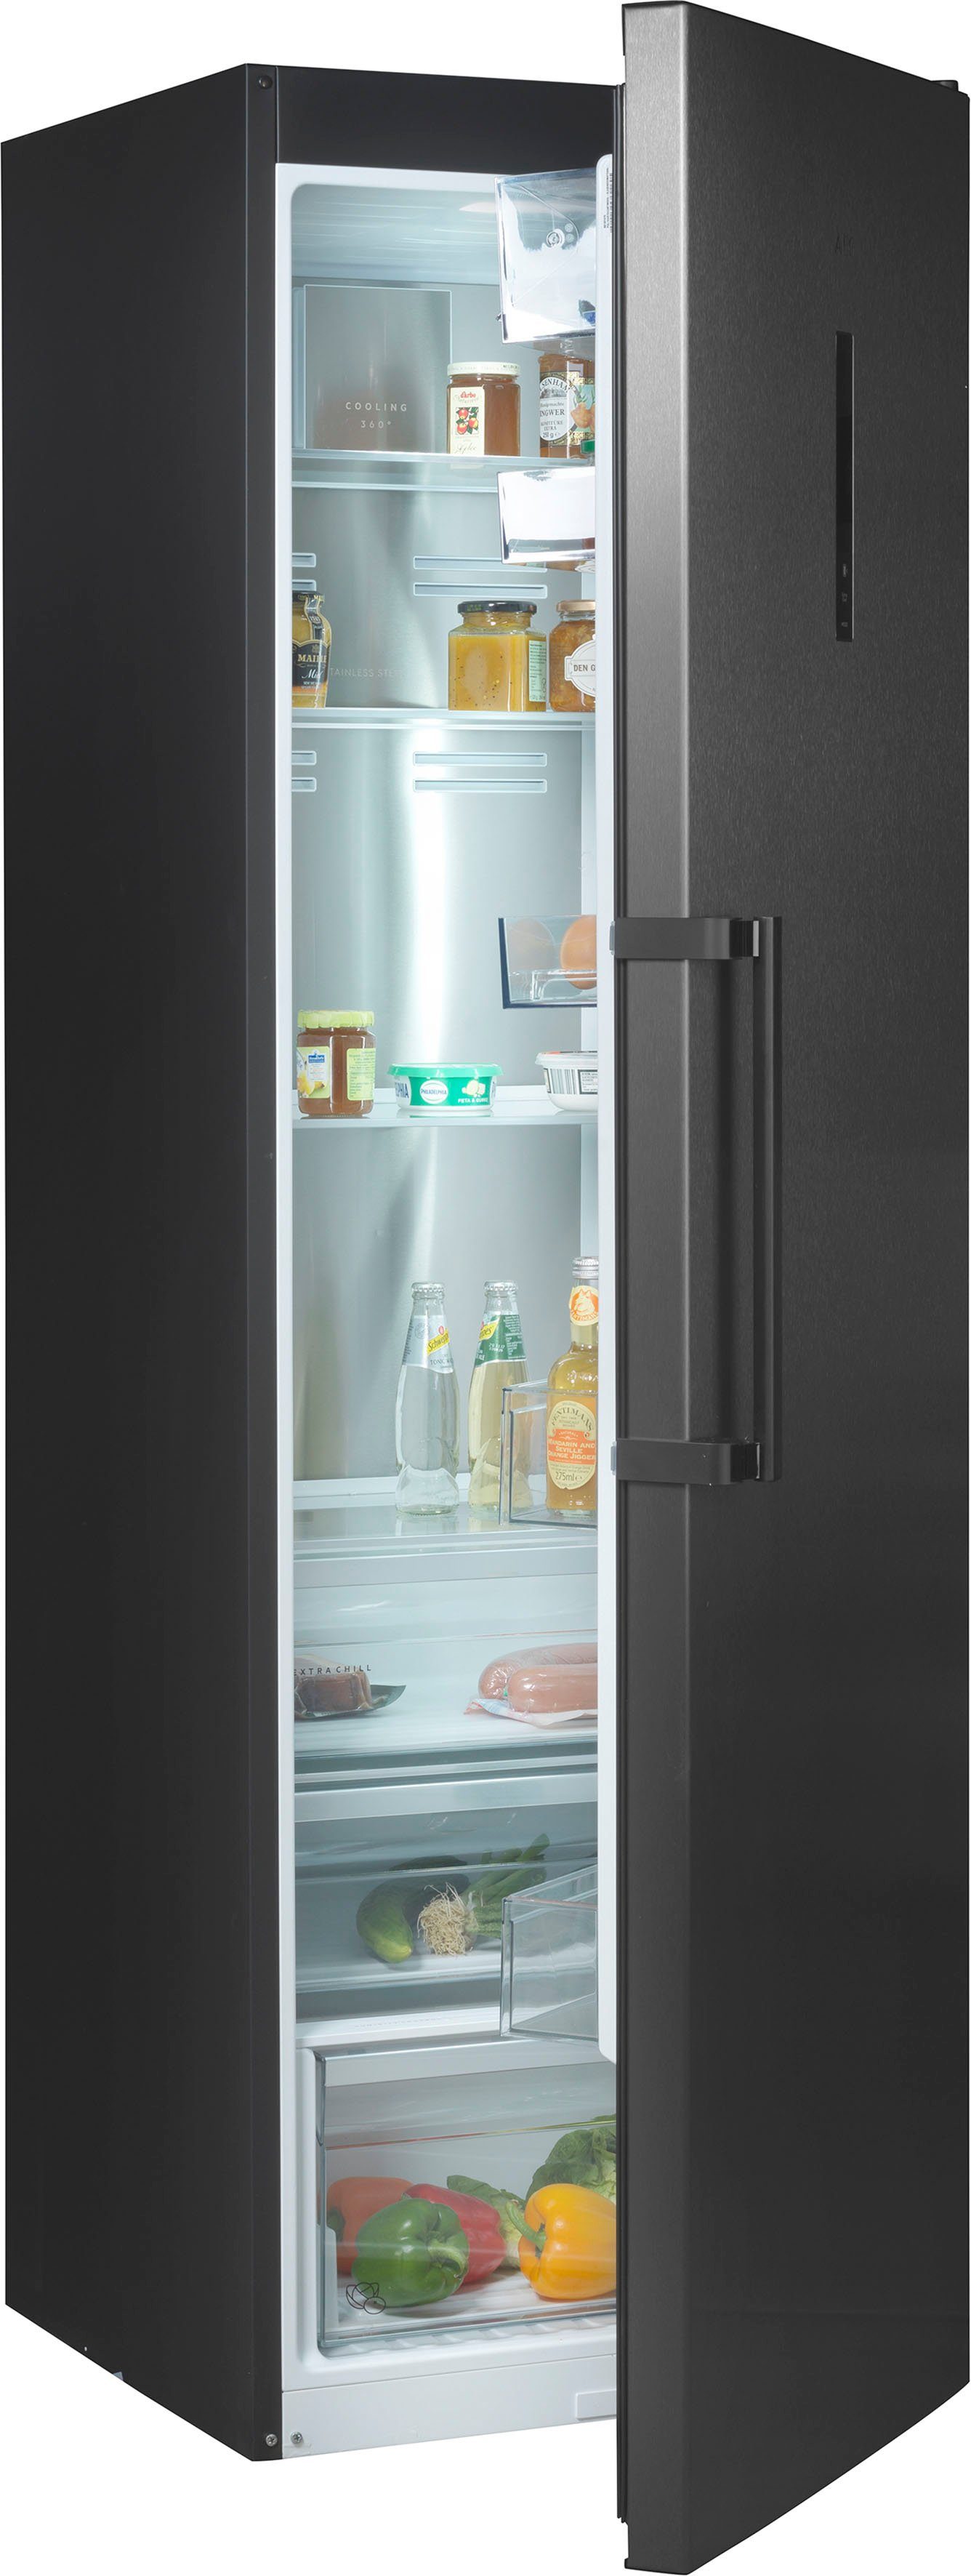 Liebherr Standkühlschränke ohne Gefrierfach kaufen | OTTO